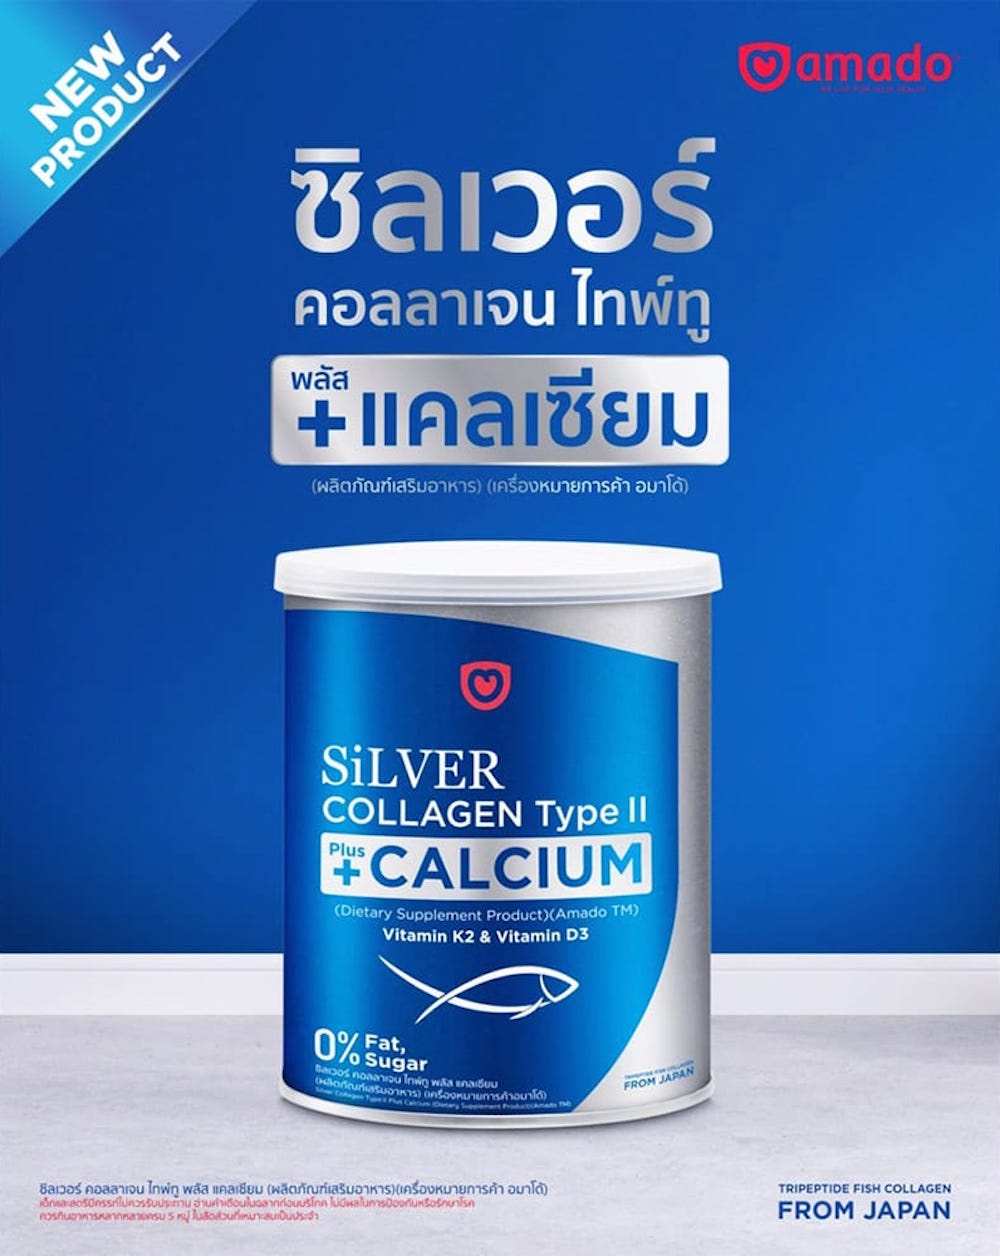 ภาพอธิบายเพิ่มเติมของ Amado ผลิตภัณฑ์เสริมอาหาร Silver Collagen Type II + Calcium อมาโด้ ซิลเวอร์ คอลลาเจน